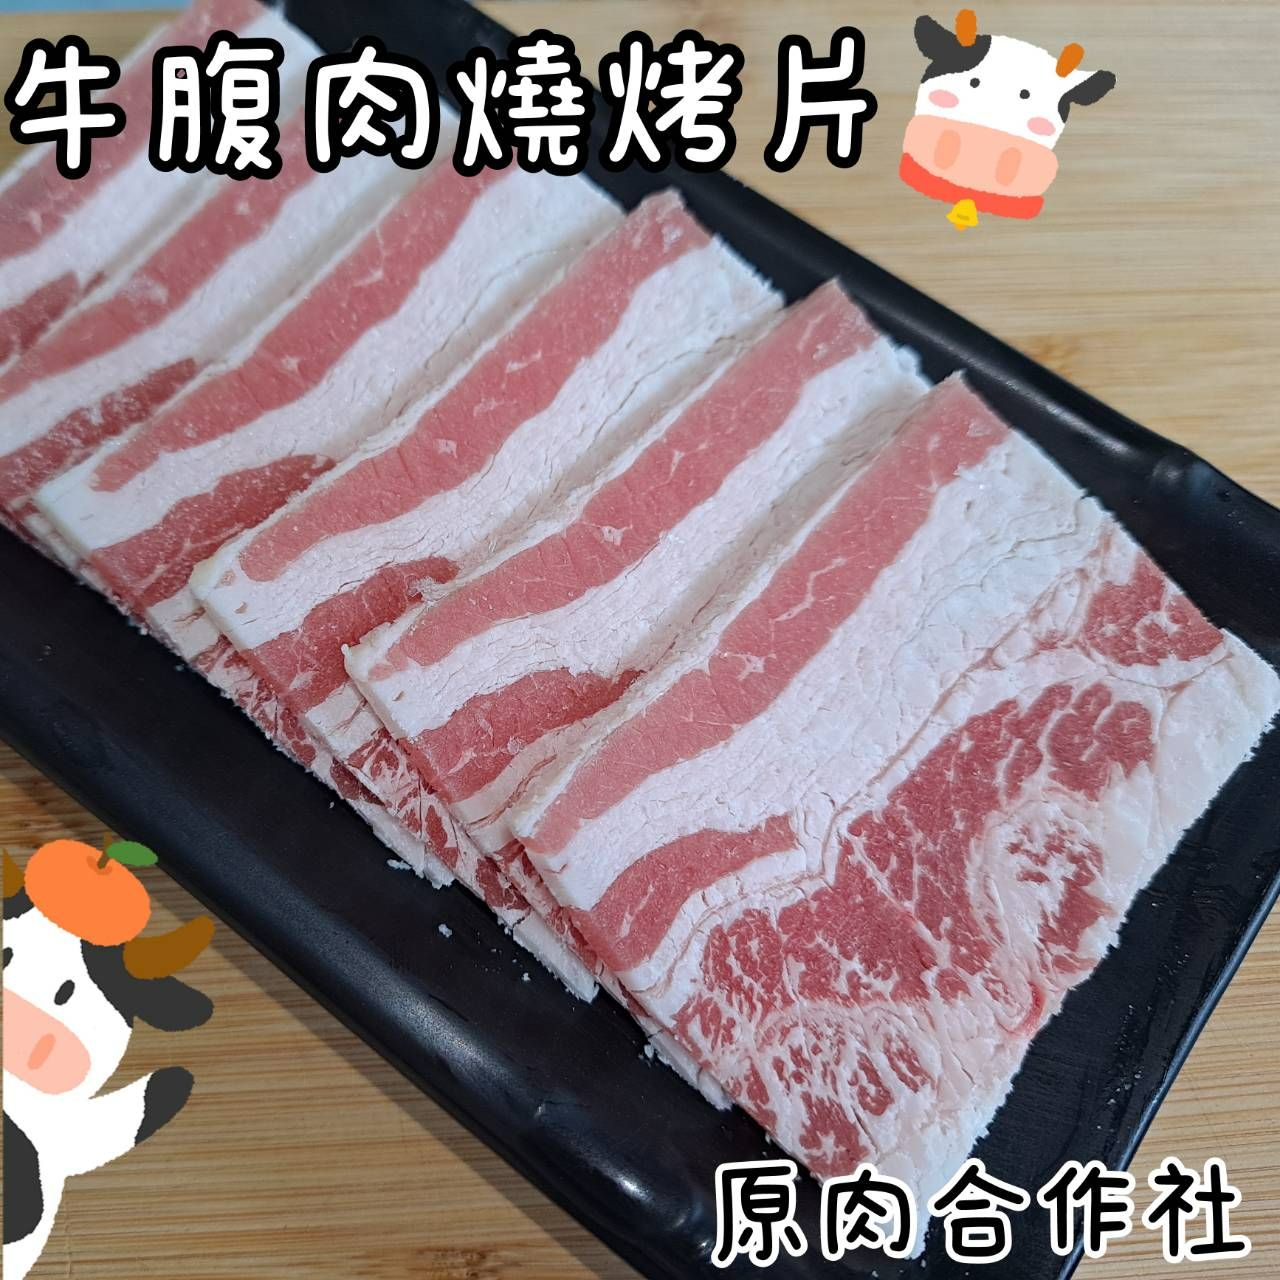 【原肉合作社】日系燒肉店專用!!美國安格斯牛腹肉燒烤片